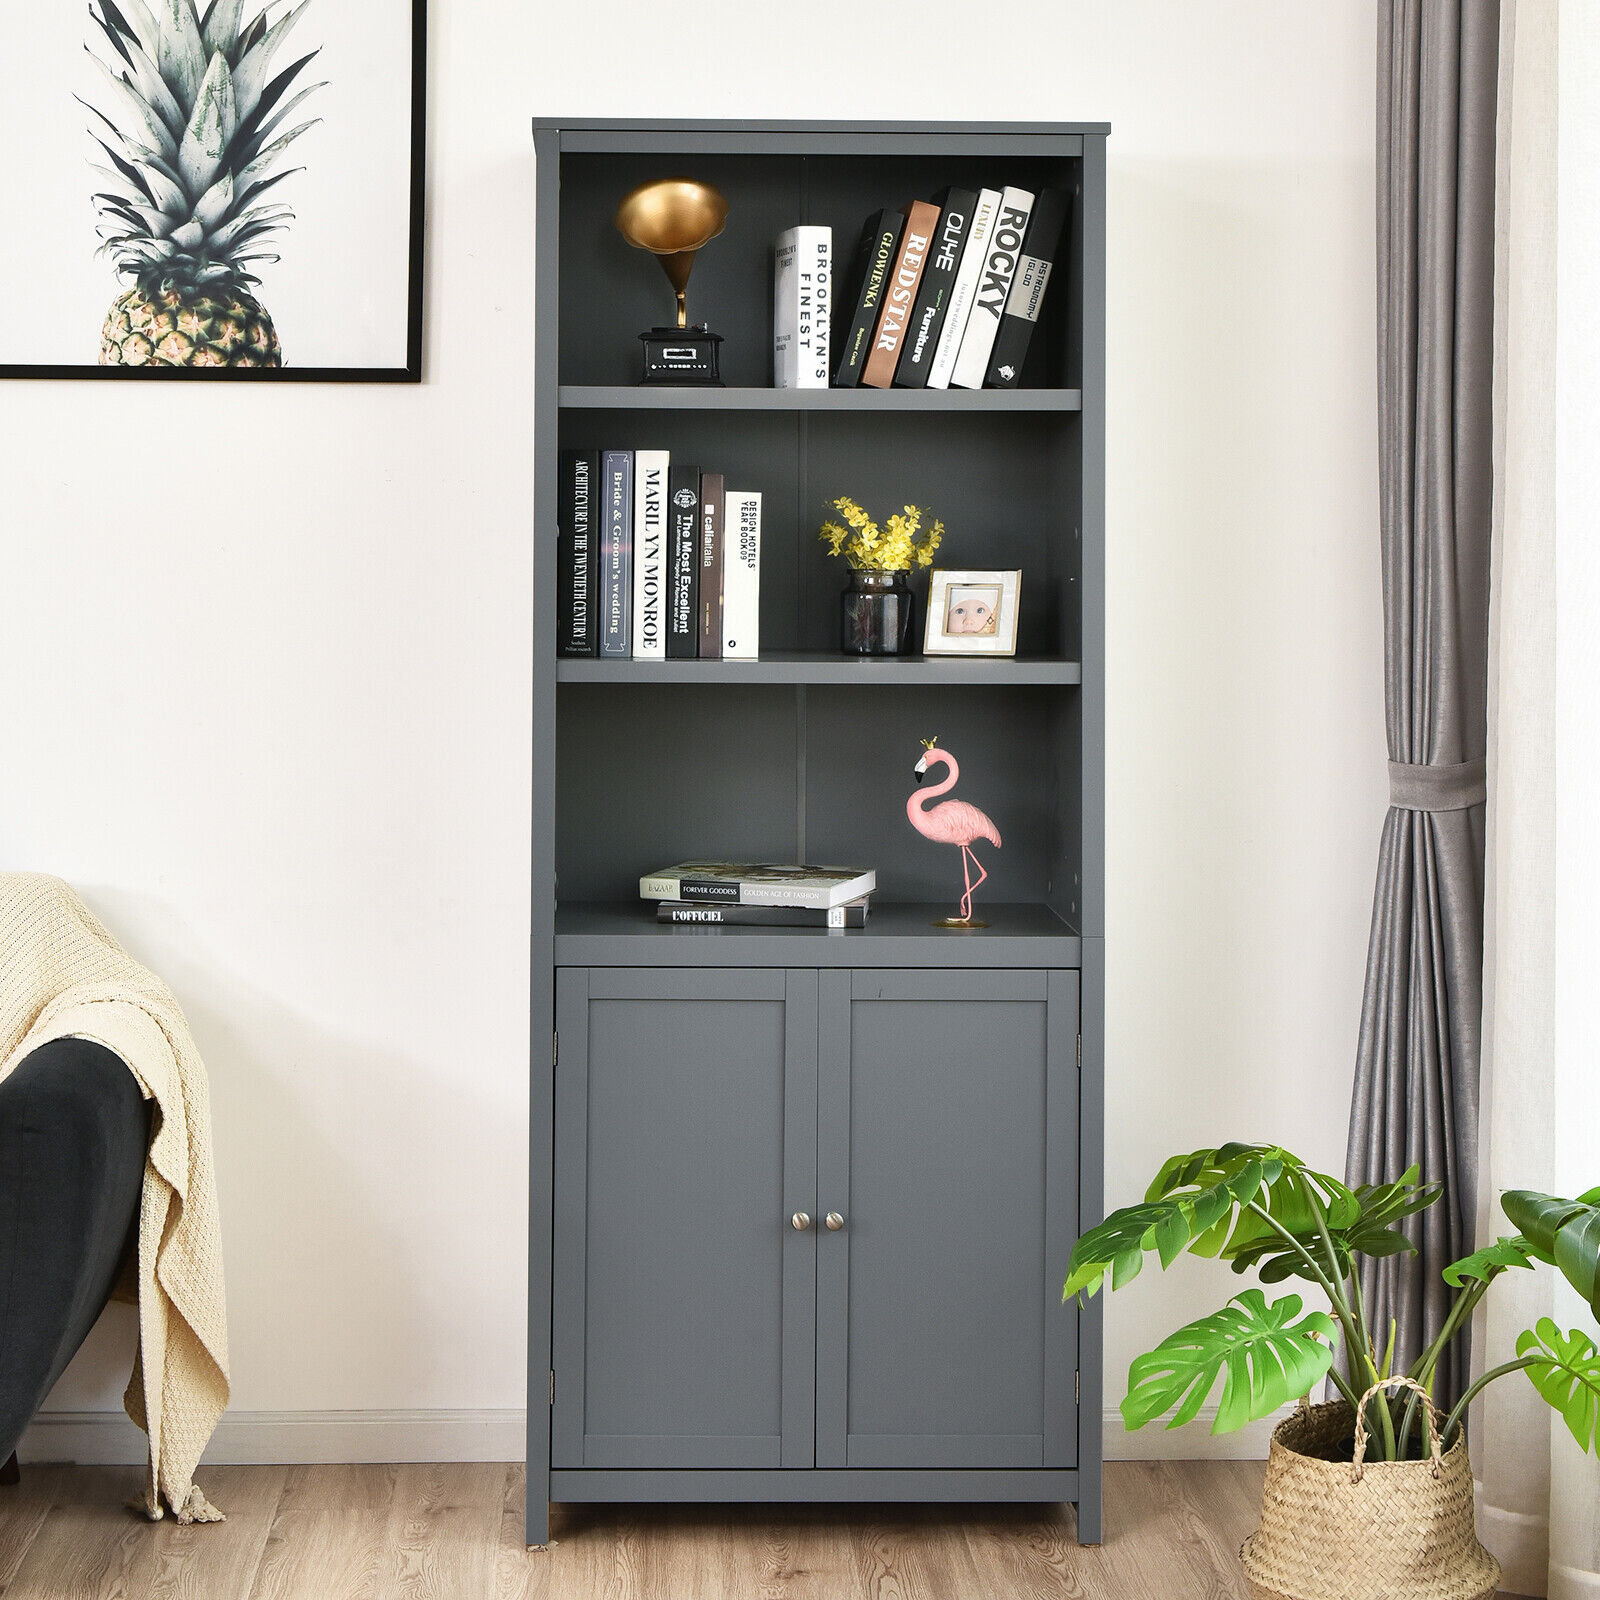 Ebern Designs Baram 5 Shelf Bookcase Modern White Wooden Bookshelf for  Bedroom, Living Room, Home Office